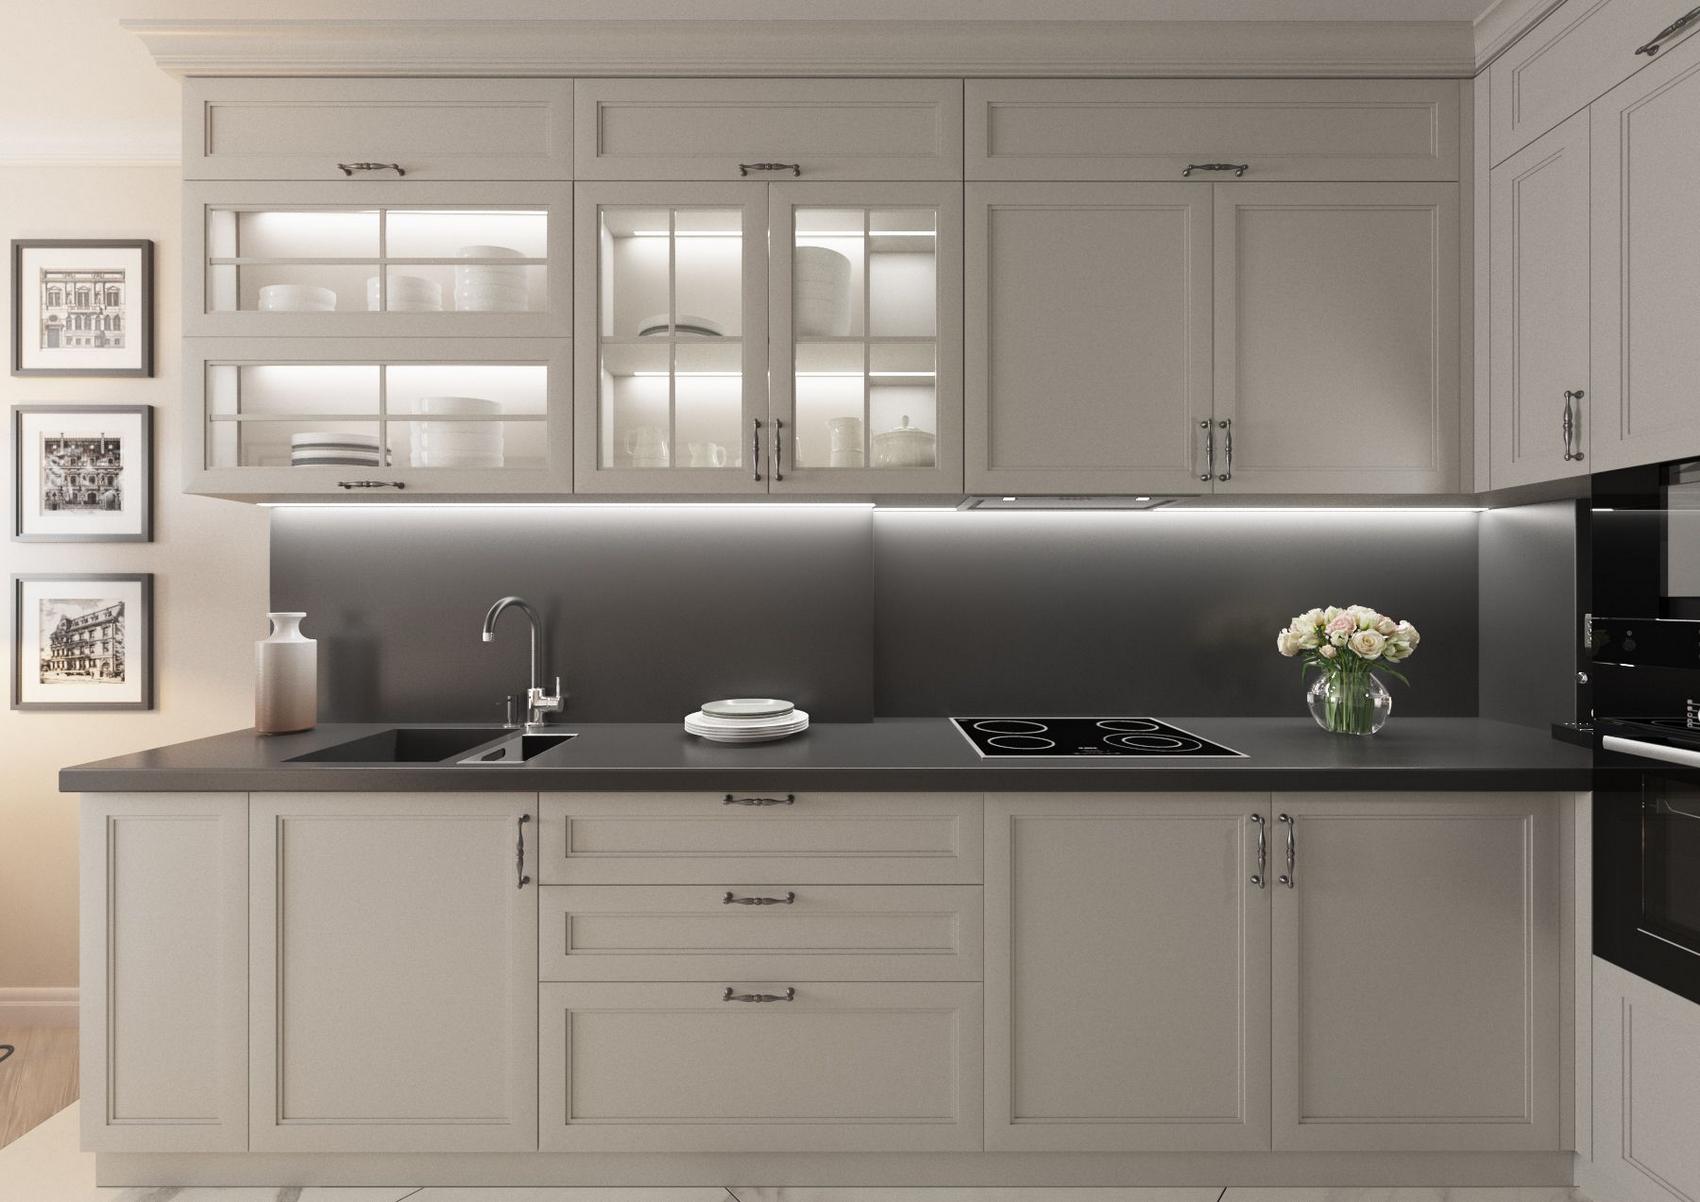 Phòng bếp thiết kế hiện đại với gam màu xám kết hợp đen ở mặt bàn và backsplash. Hệ thống đèn gầm ở dưới tủ bếp cũng như các ngăn đựng chén bát cho khu vực nấu nướng sáng sủa.